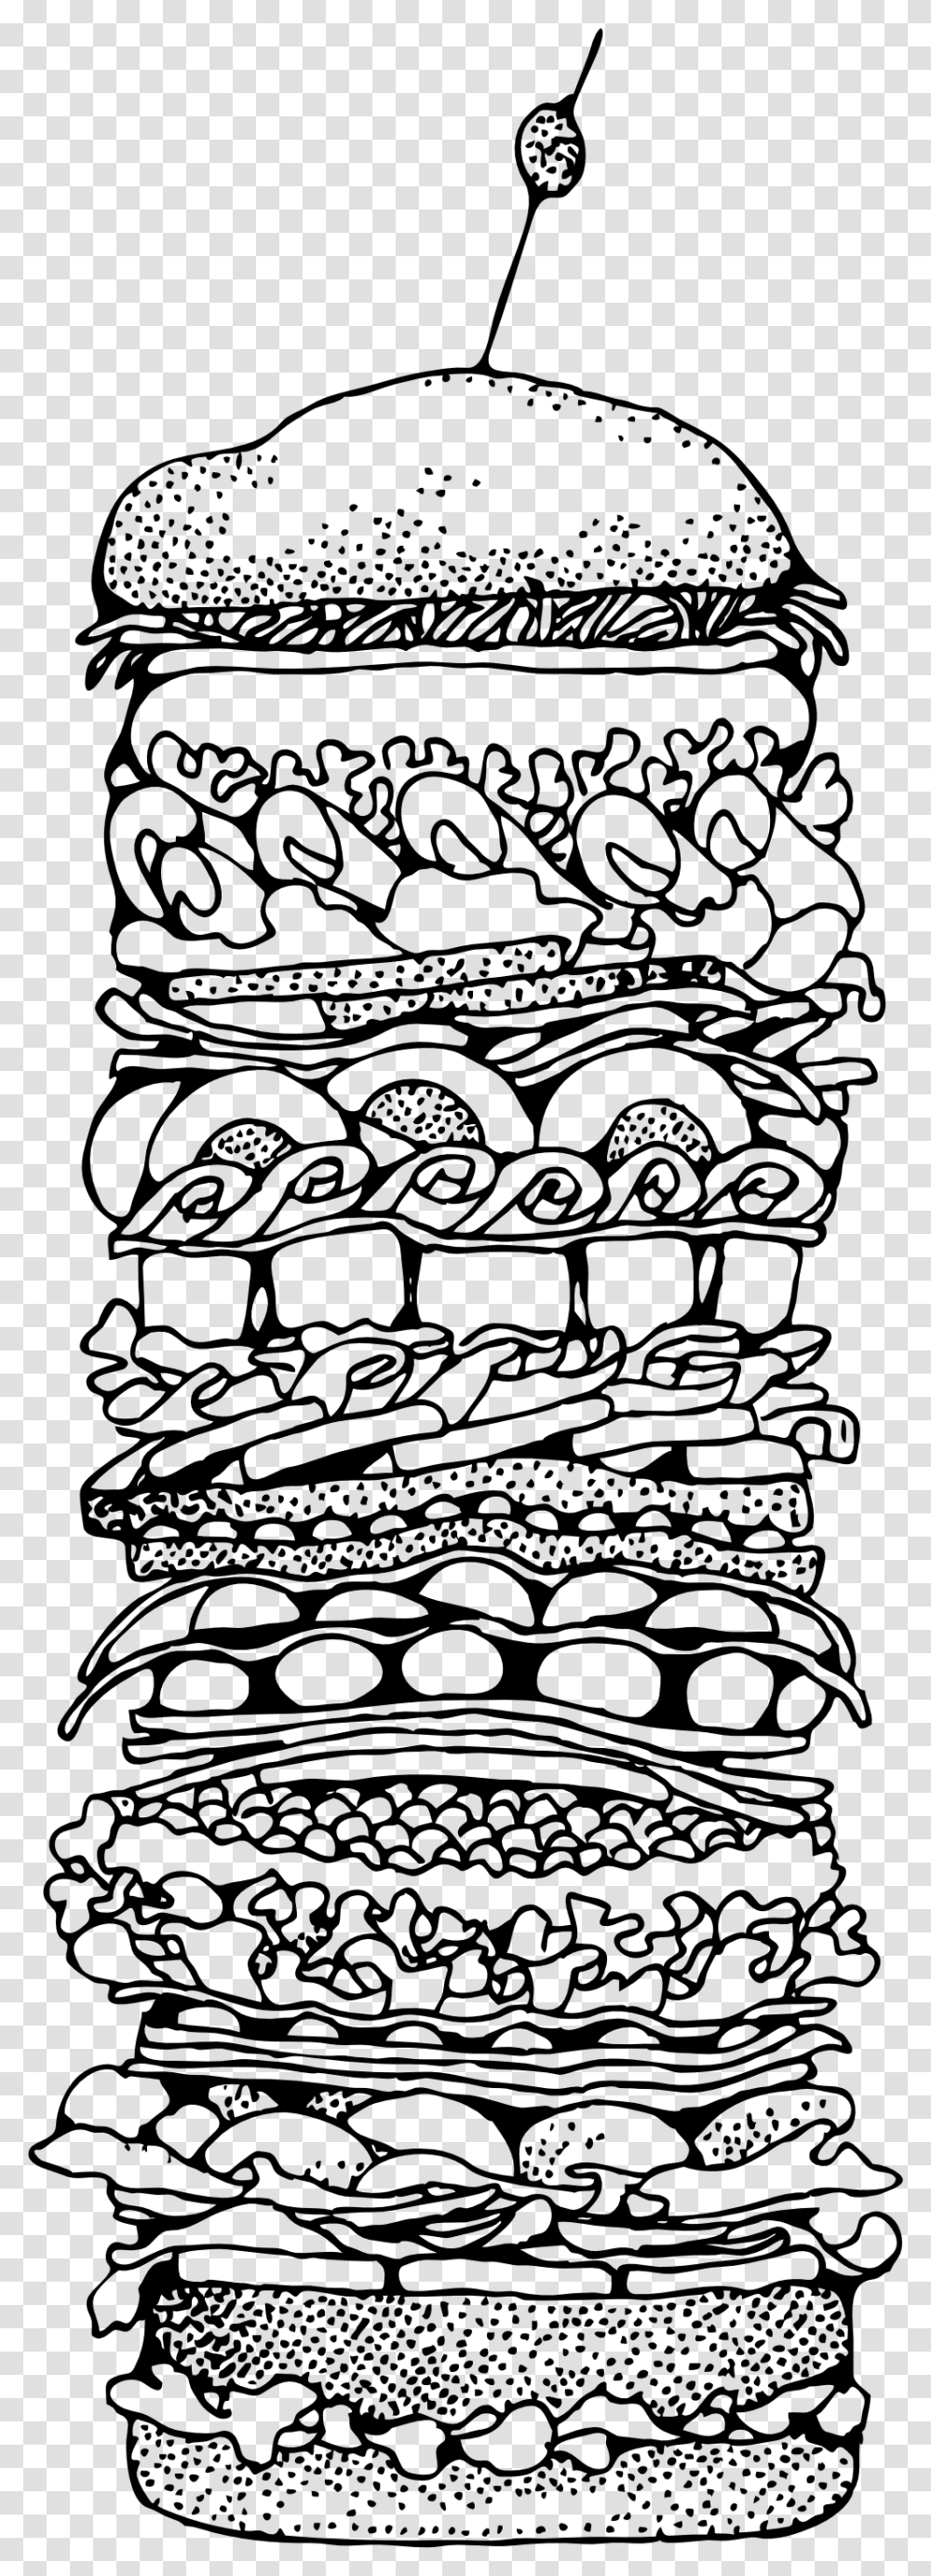 Sandwich Clipart Black Dagwood Sandwich Clip Art, Doodle, Drawing, Floral Design, Pattern Transparent Png